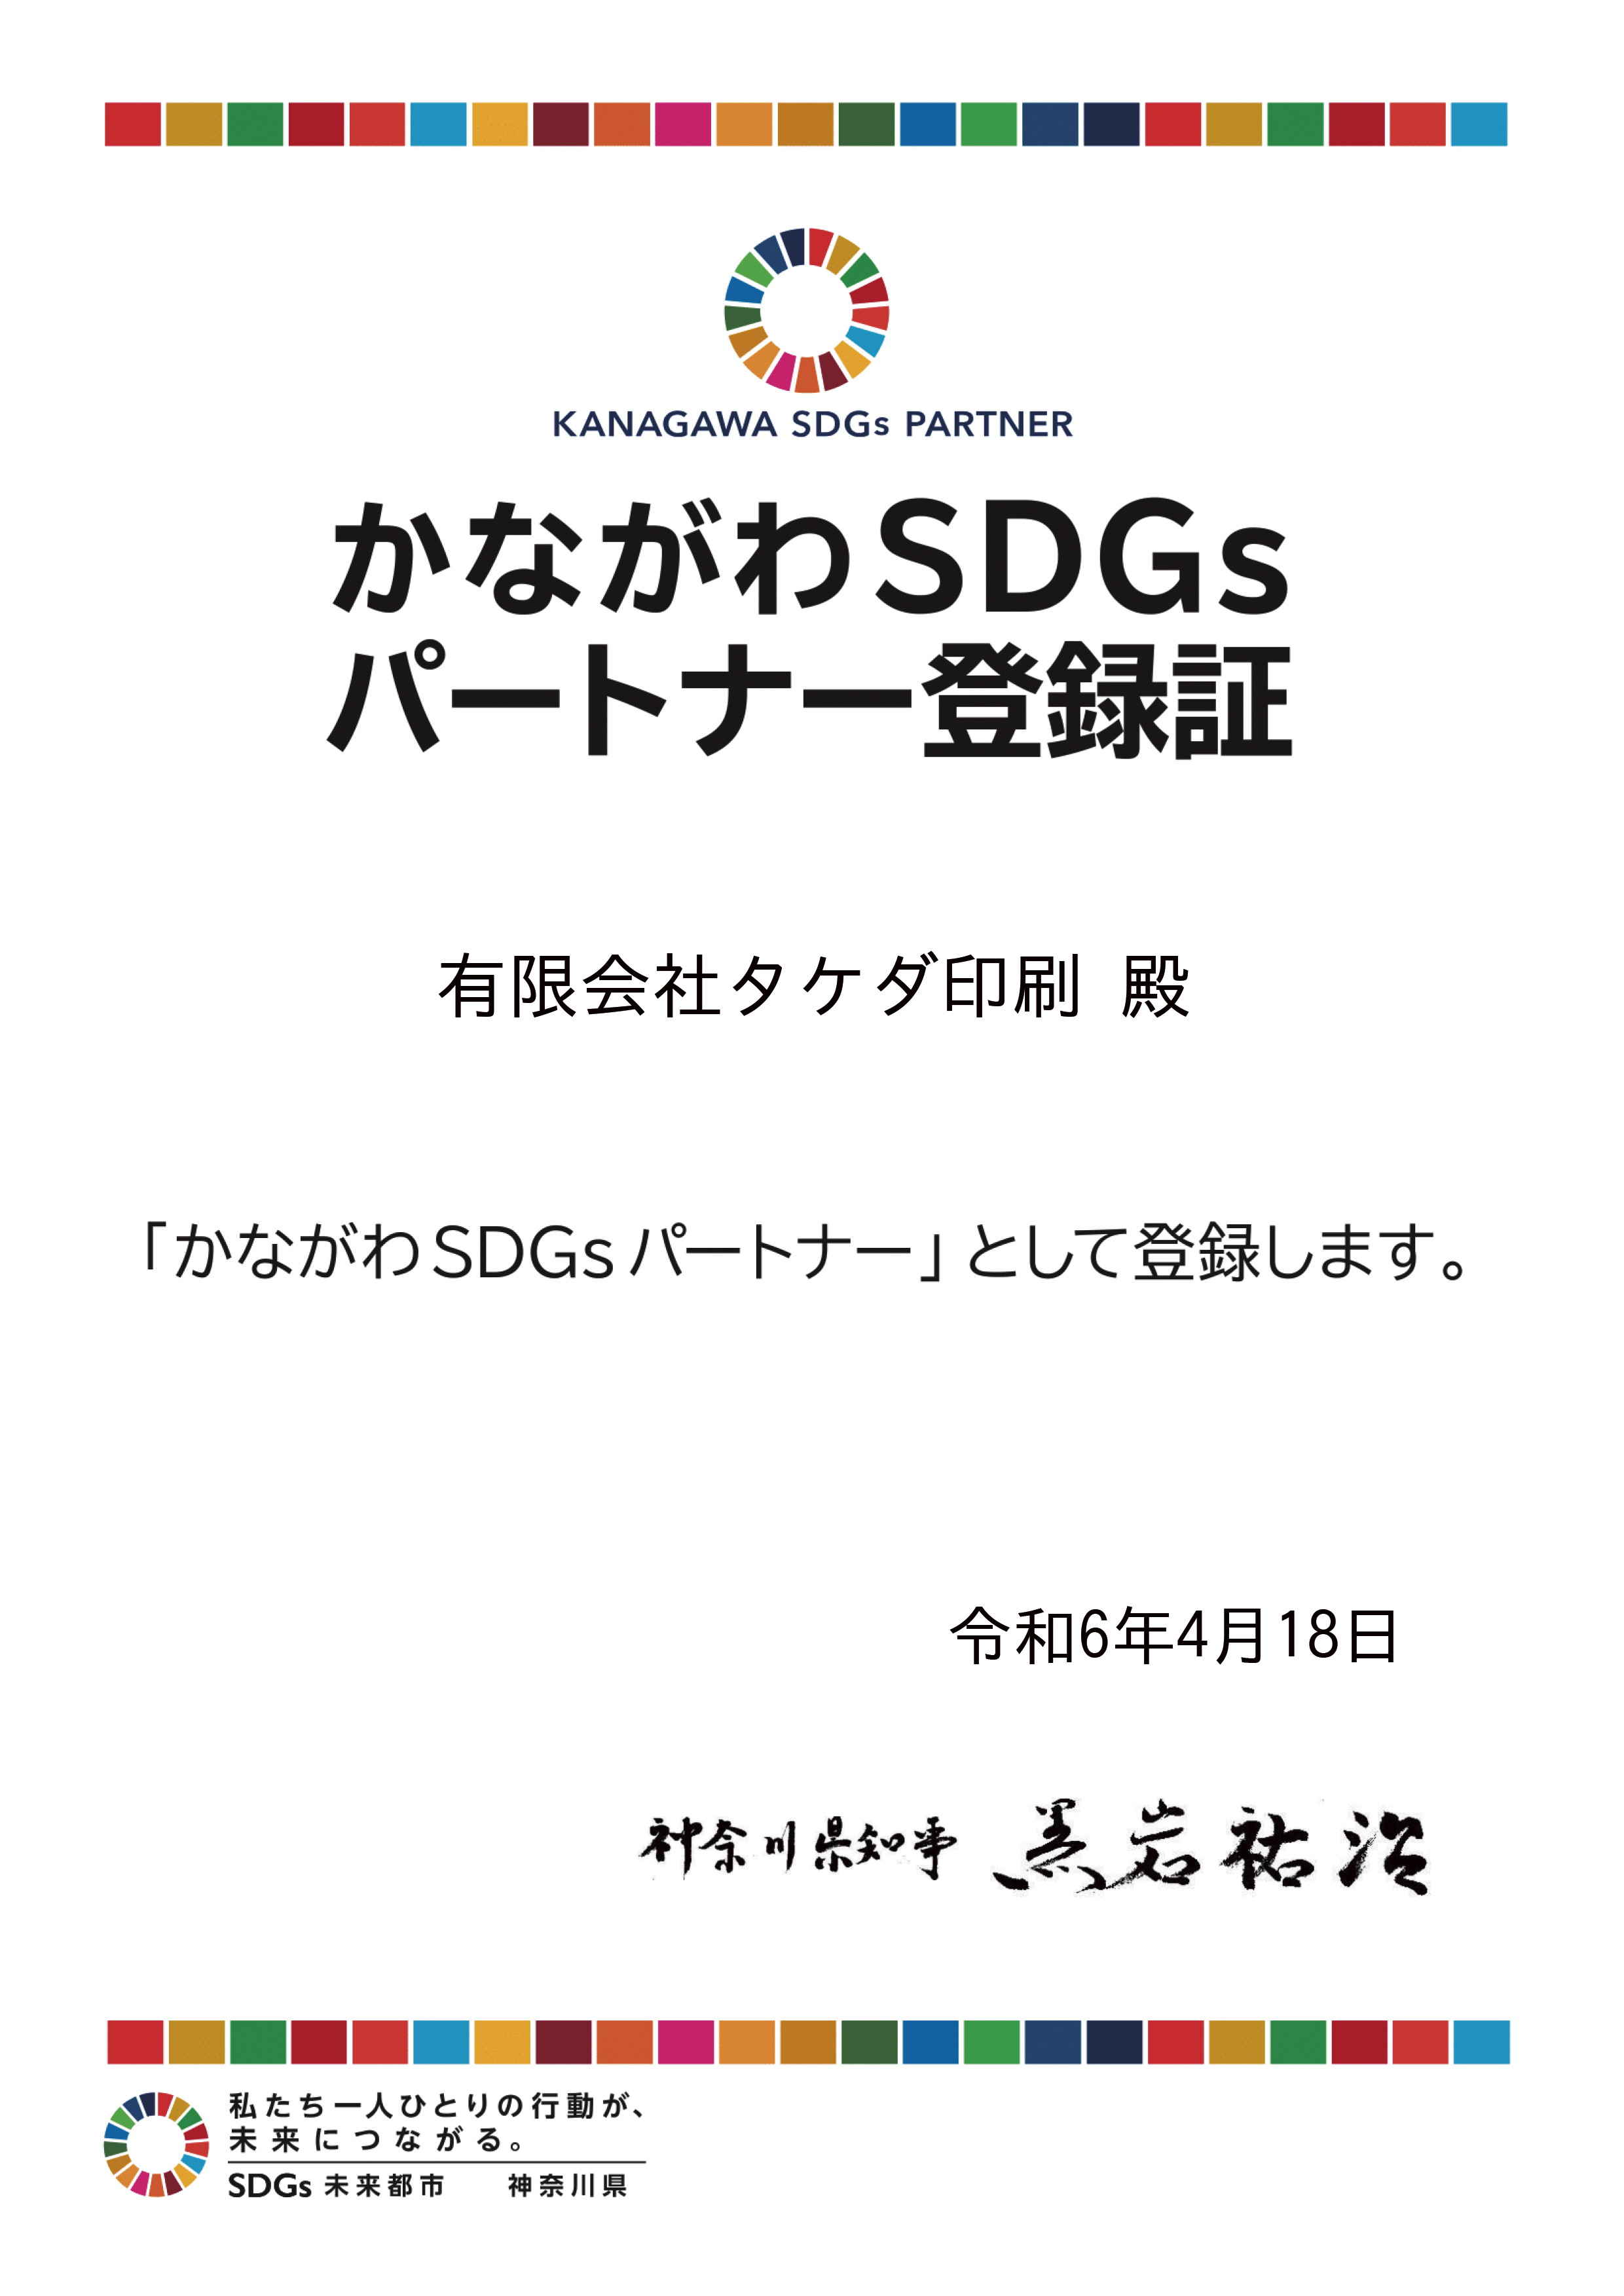 SDGs神奈川登録